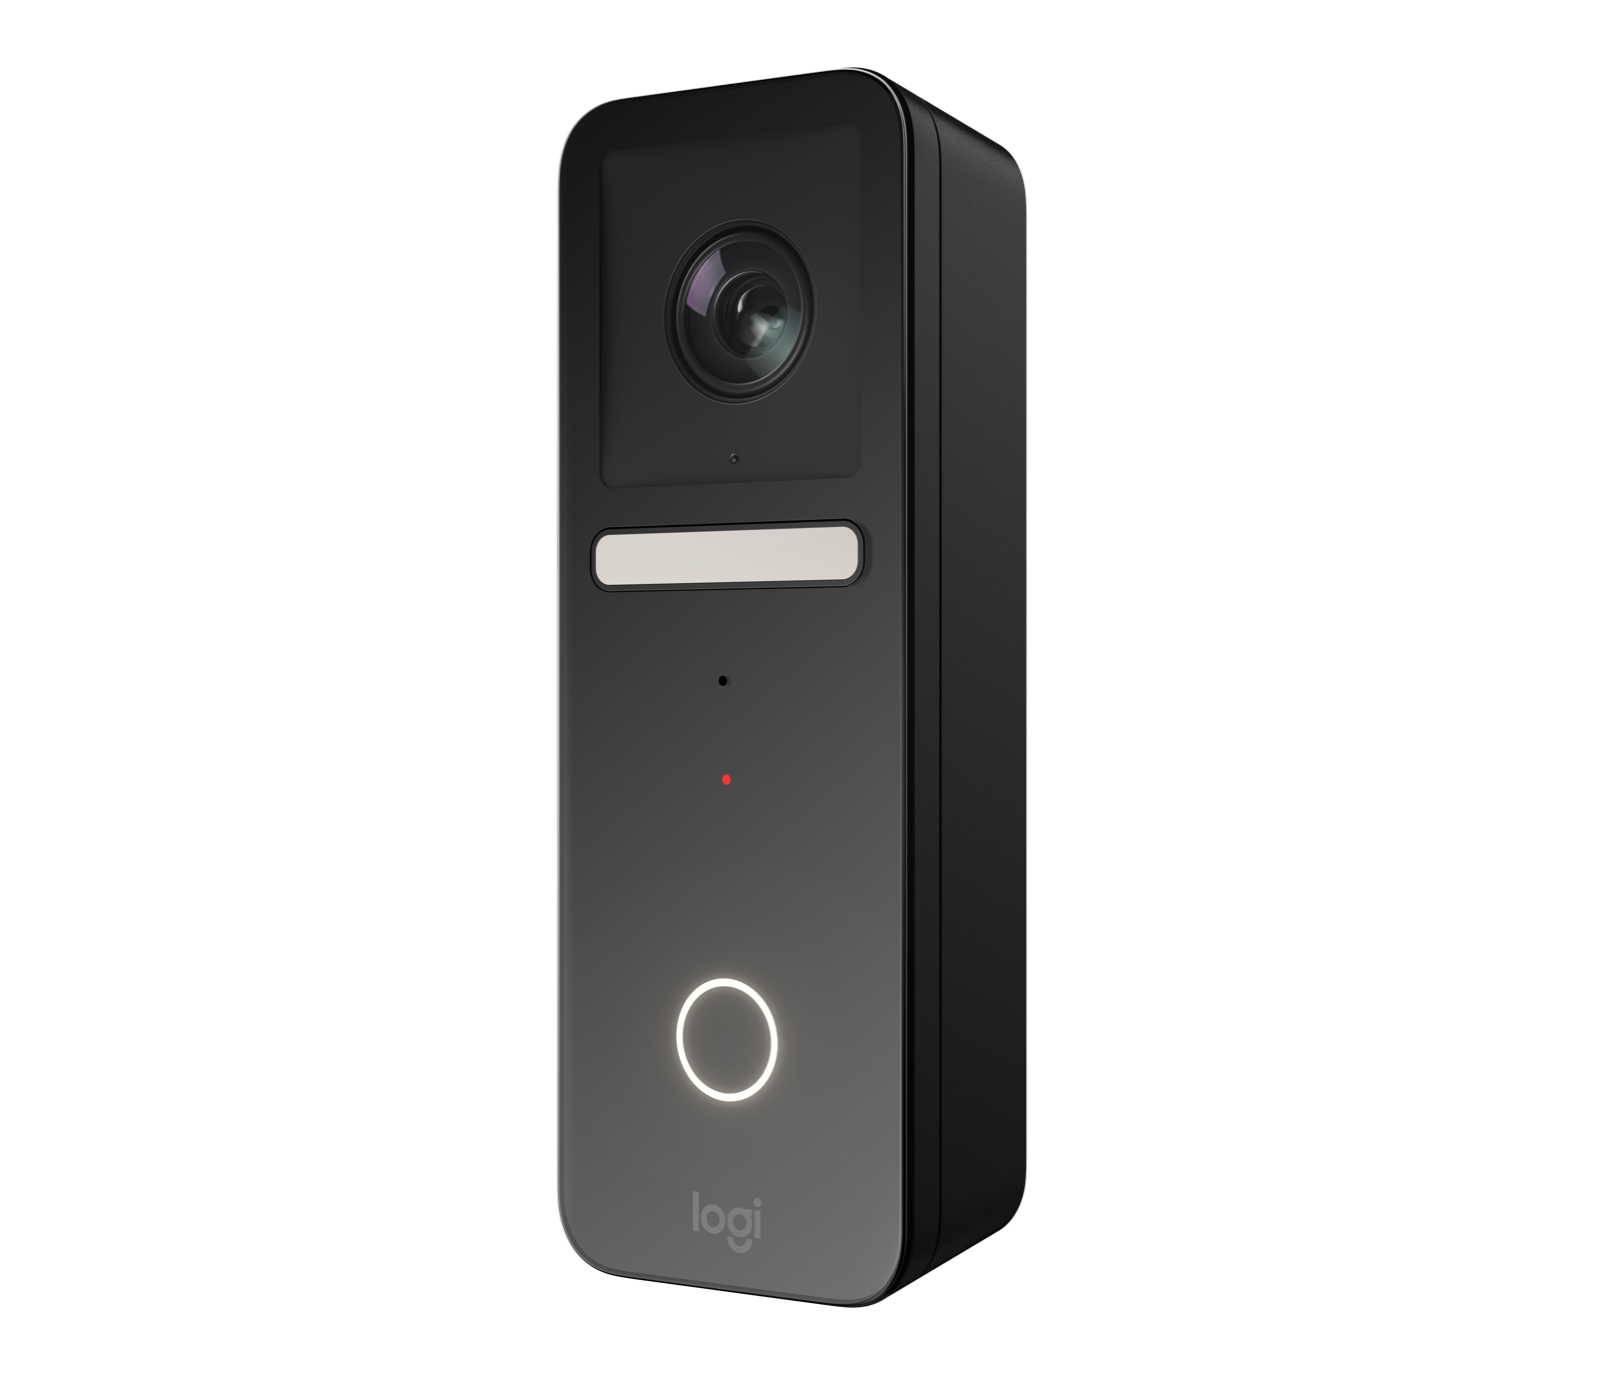 Wireless Doorbell, Waterproof Mini Doorbell- 5 Core